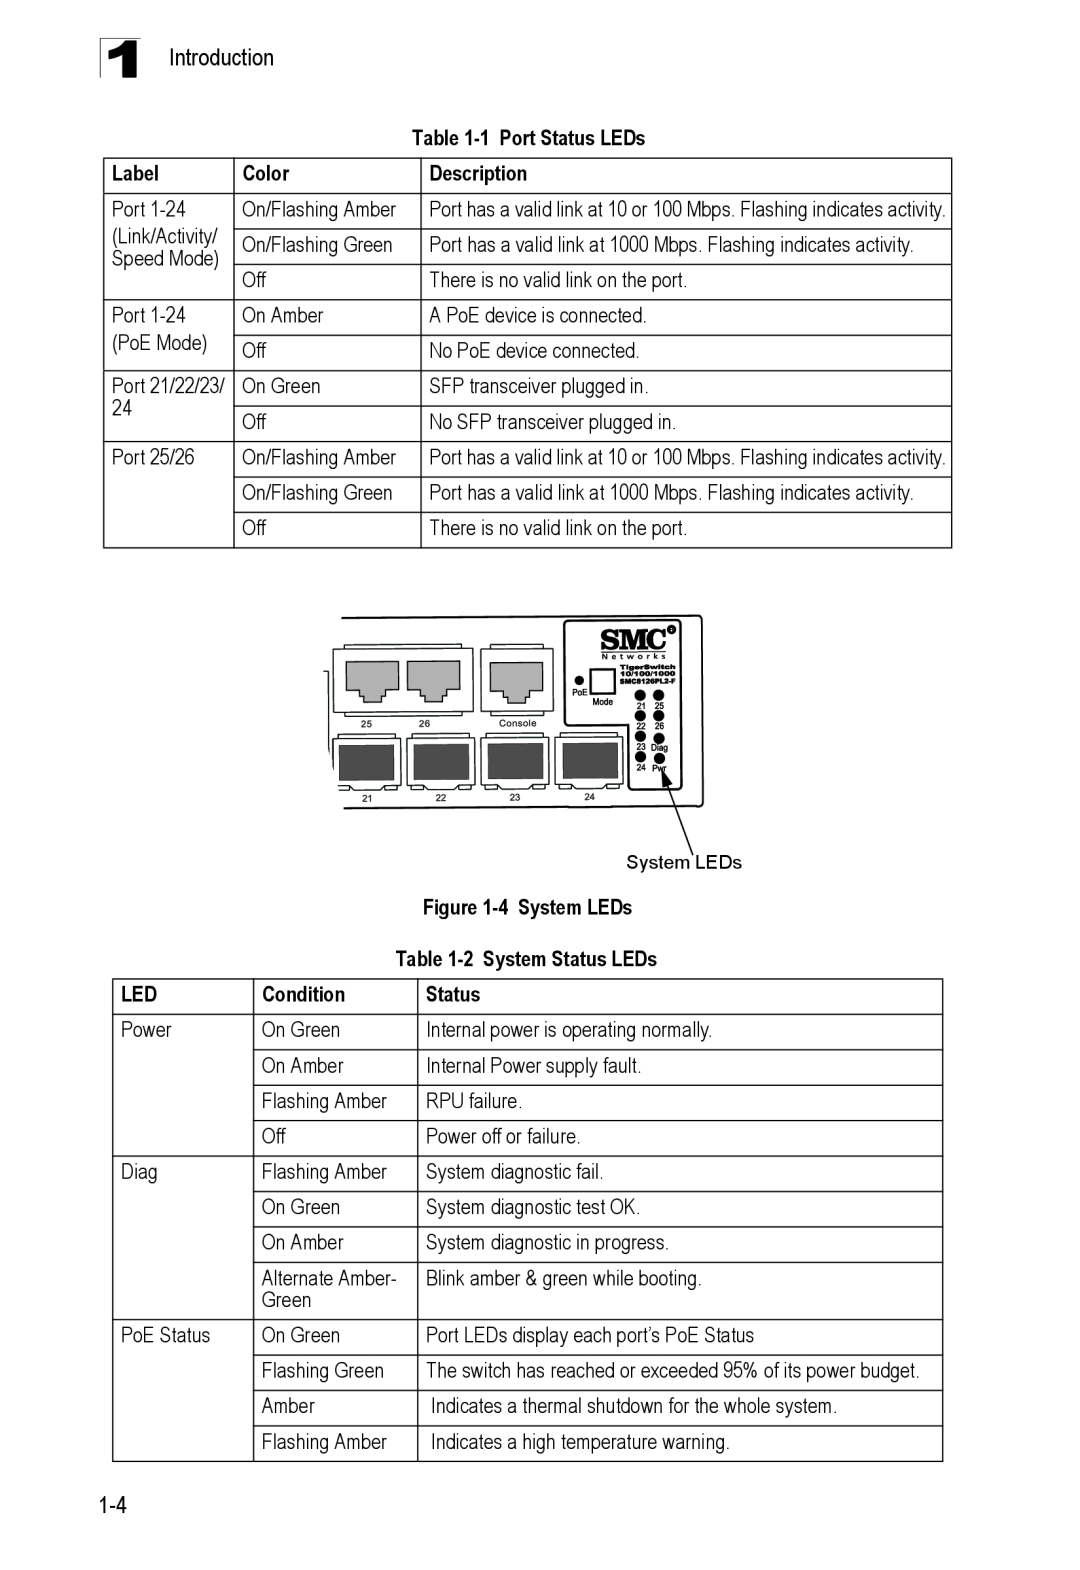 SMC Networks SMC8126PL2-F manual 1Port Status LEDs, Label, Color, Description, 4System LEDs, 2System Status LEDs, Condition 